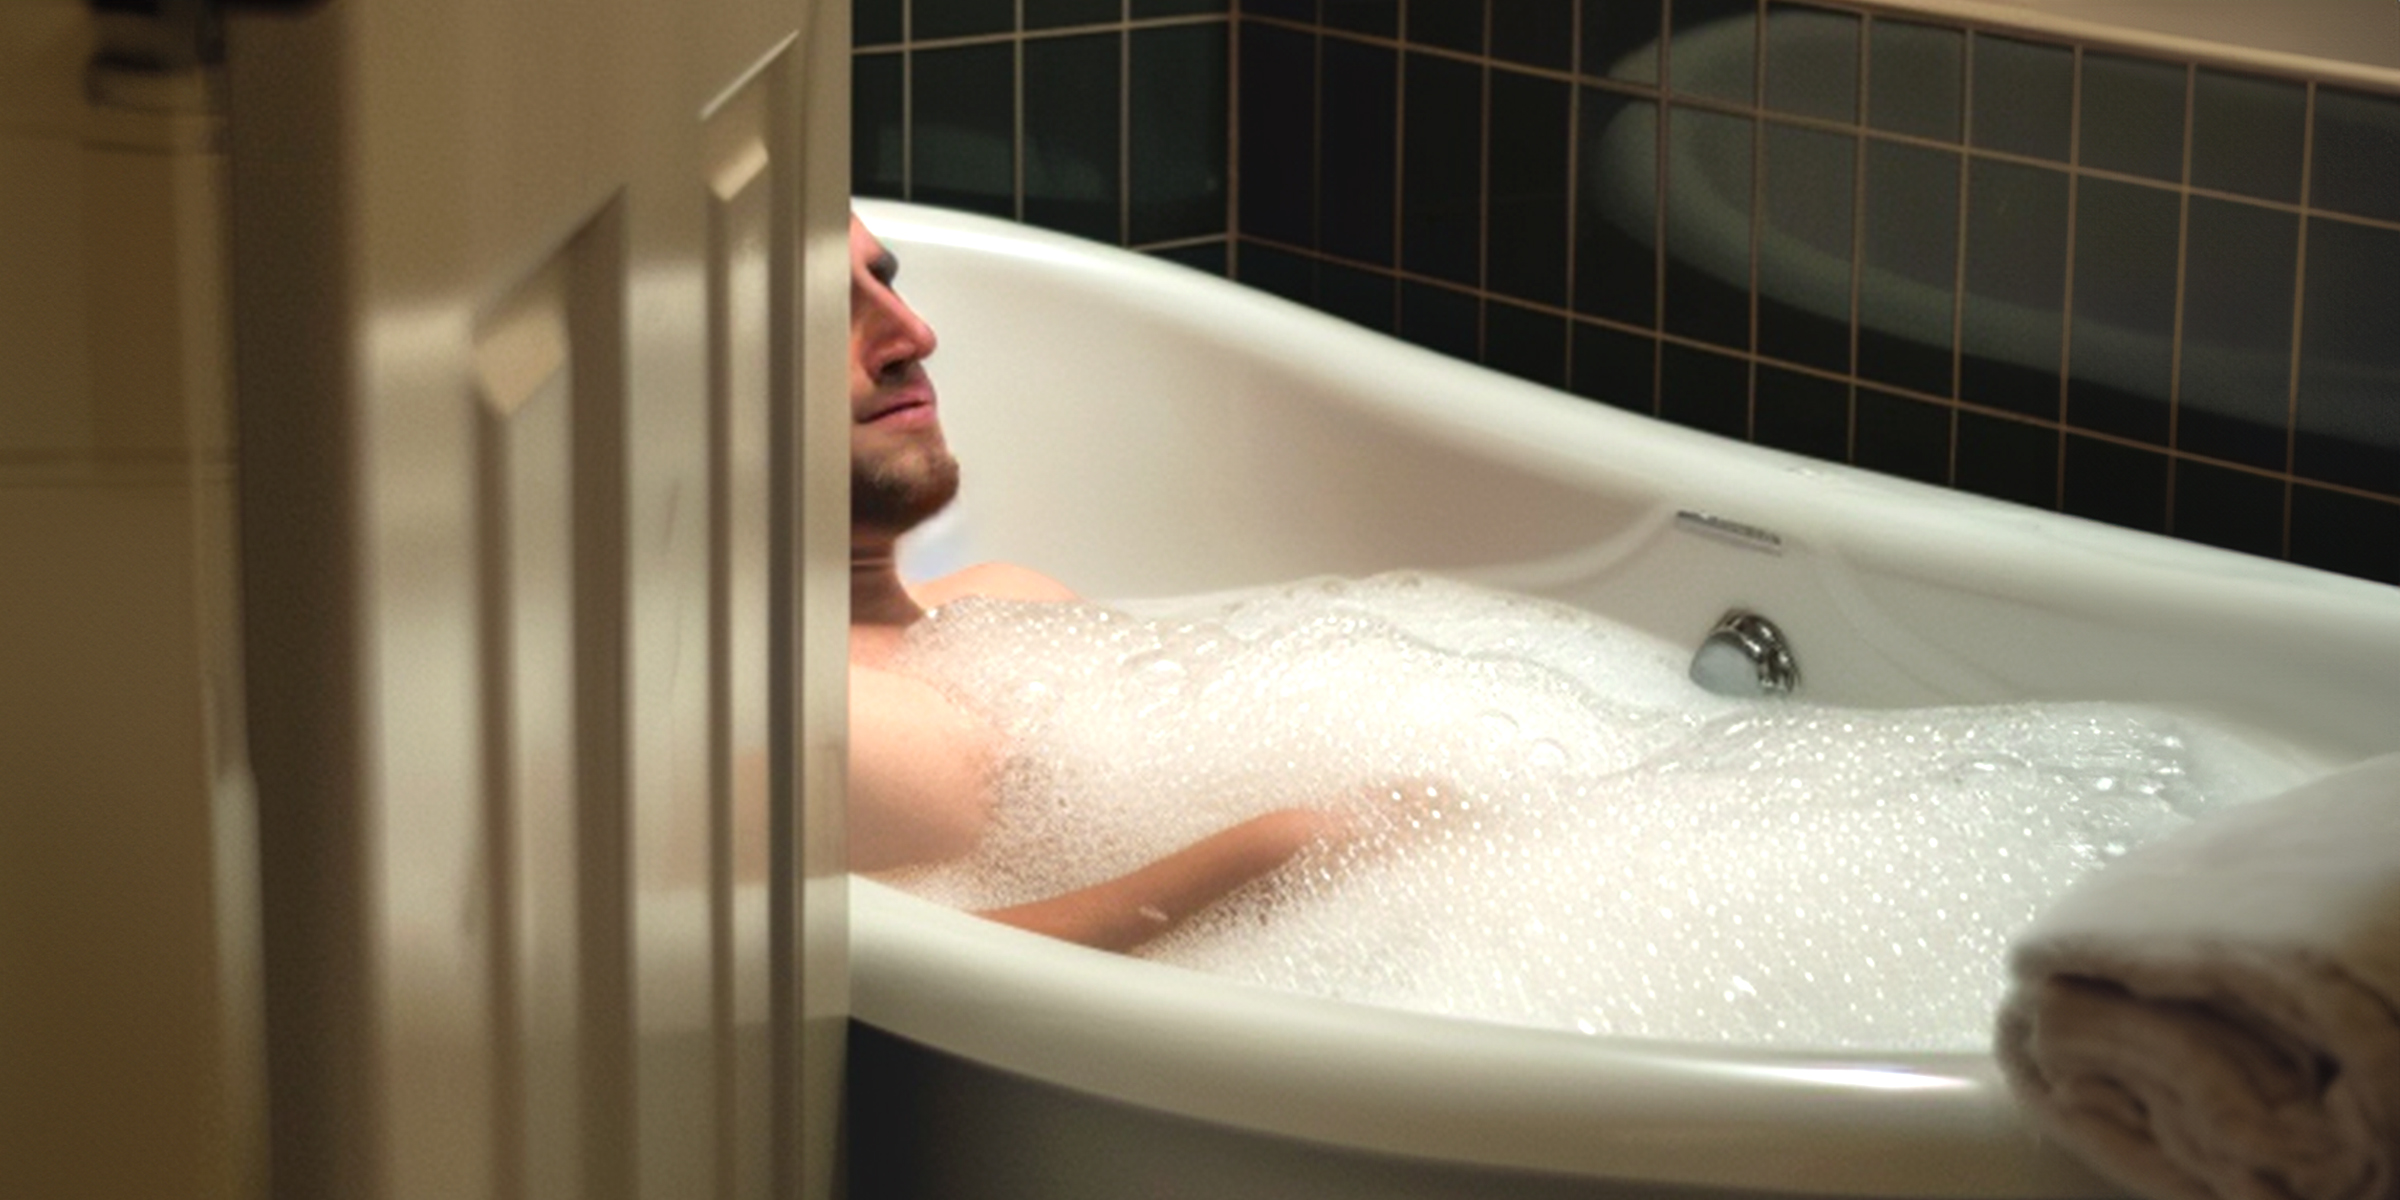 A man in a bathtub | Source: AmoMama